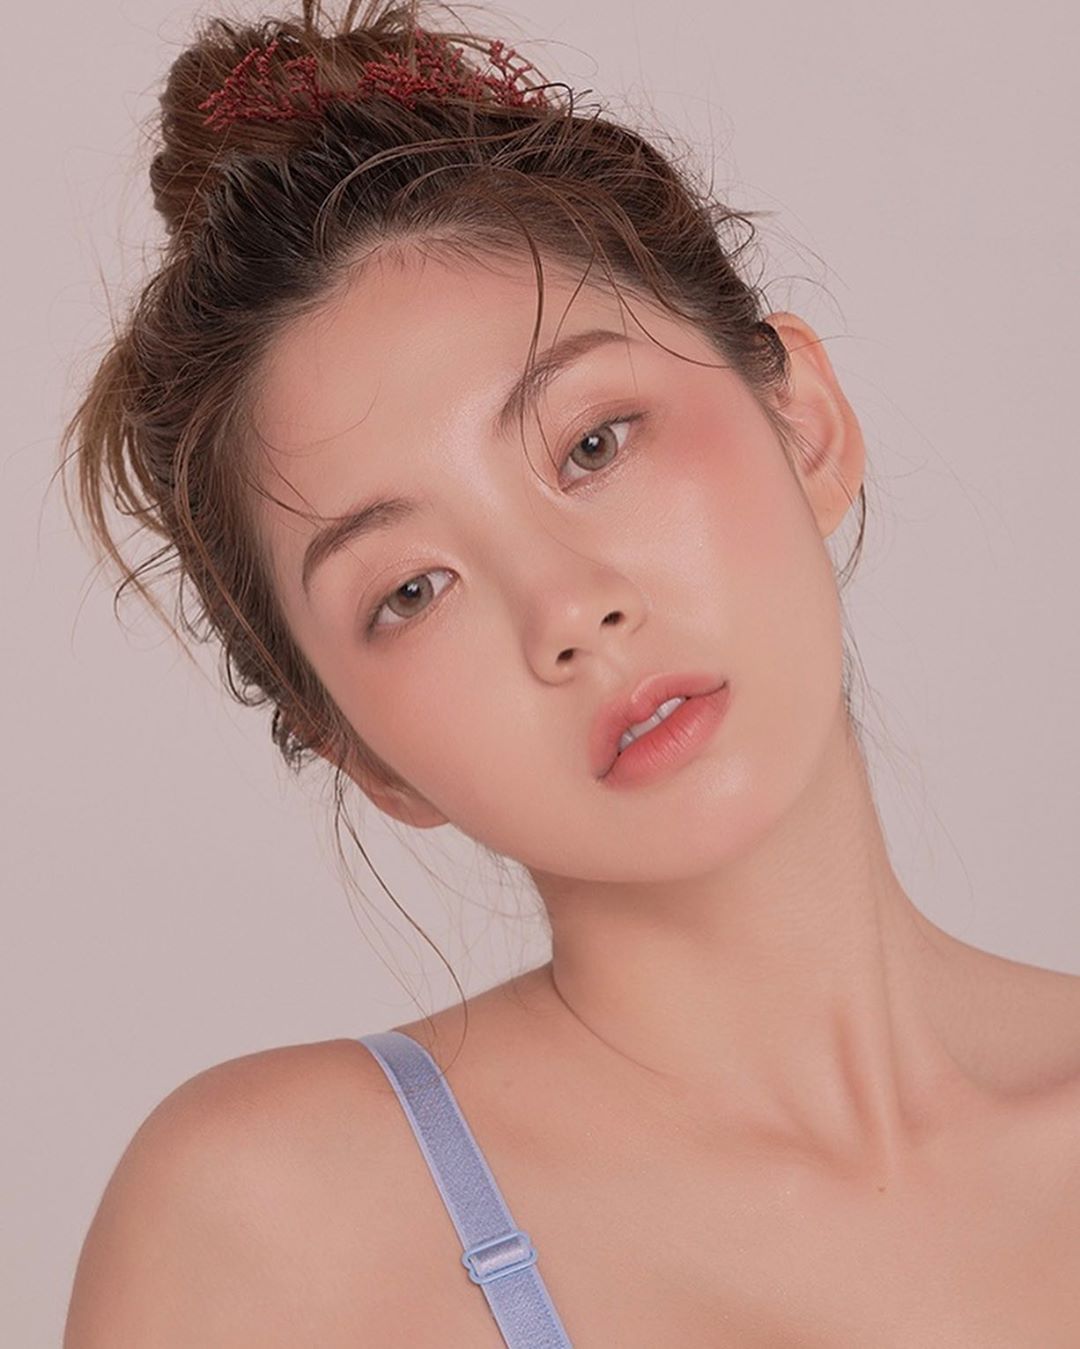 Korean Model Chae Eun Asian Beauty Girls Hot Sex Picture